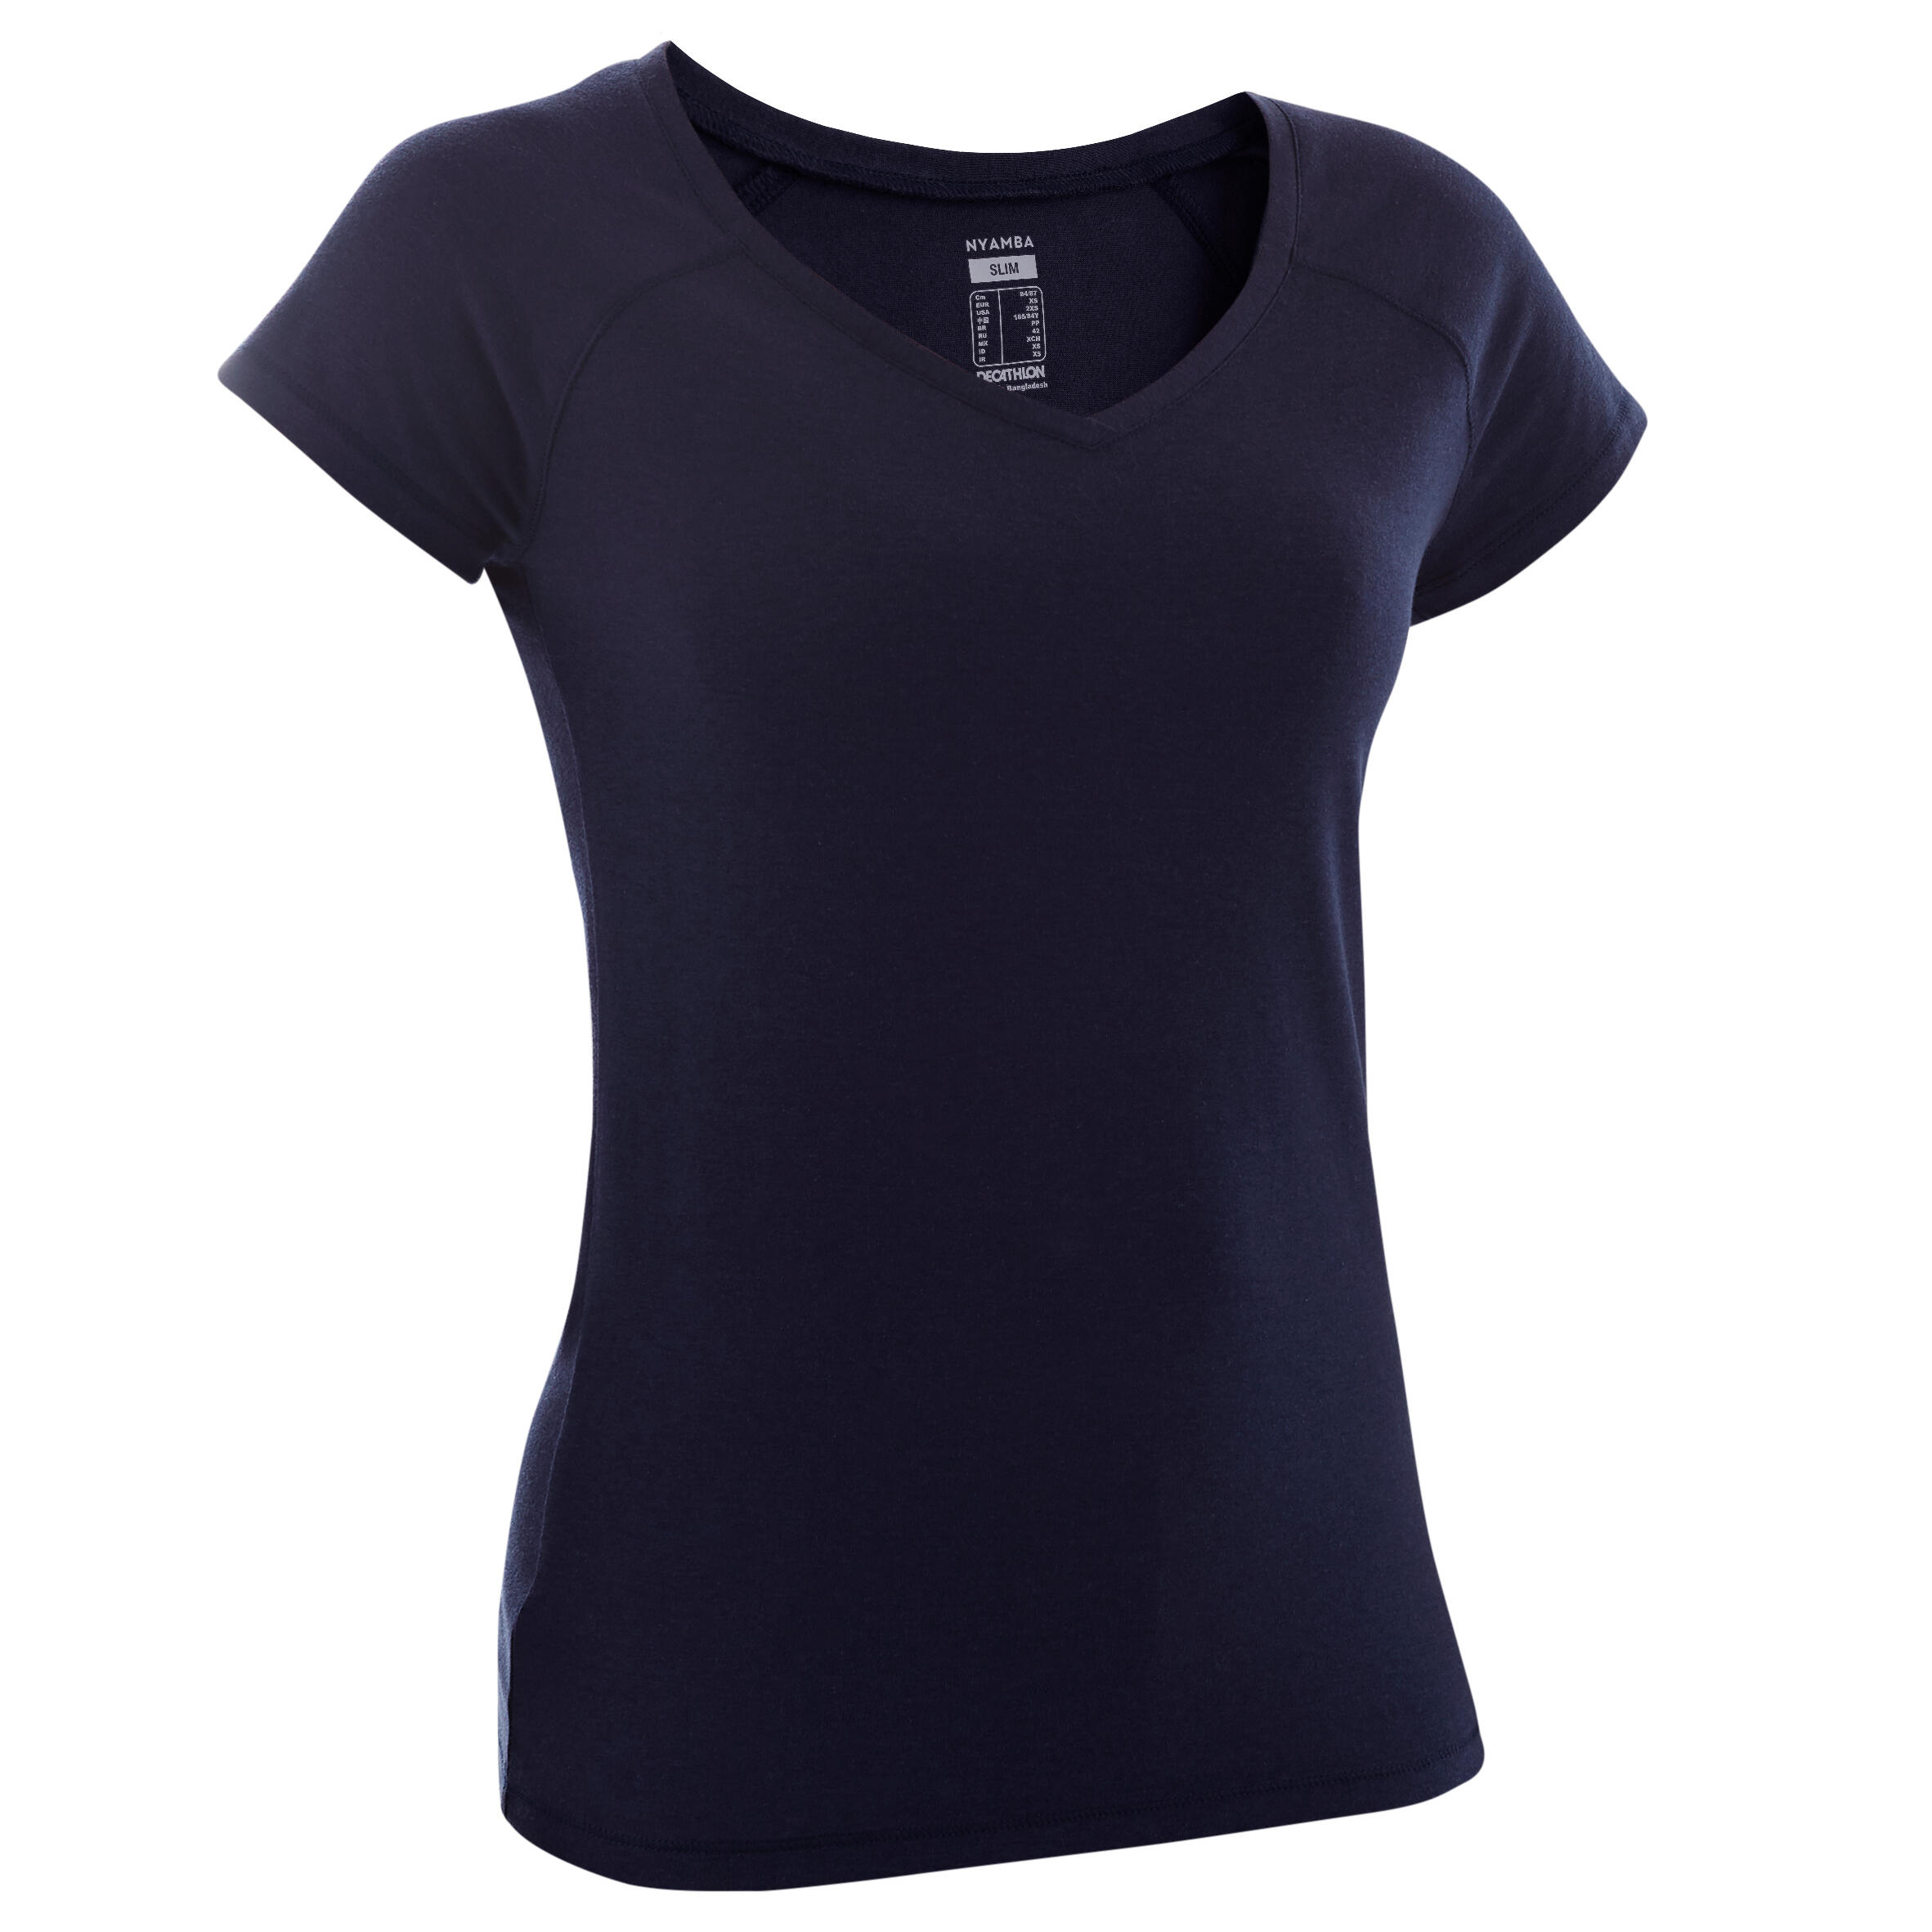 Women's Fitness V-Neck T-Shirt 500 - Navy Blue 2/2